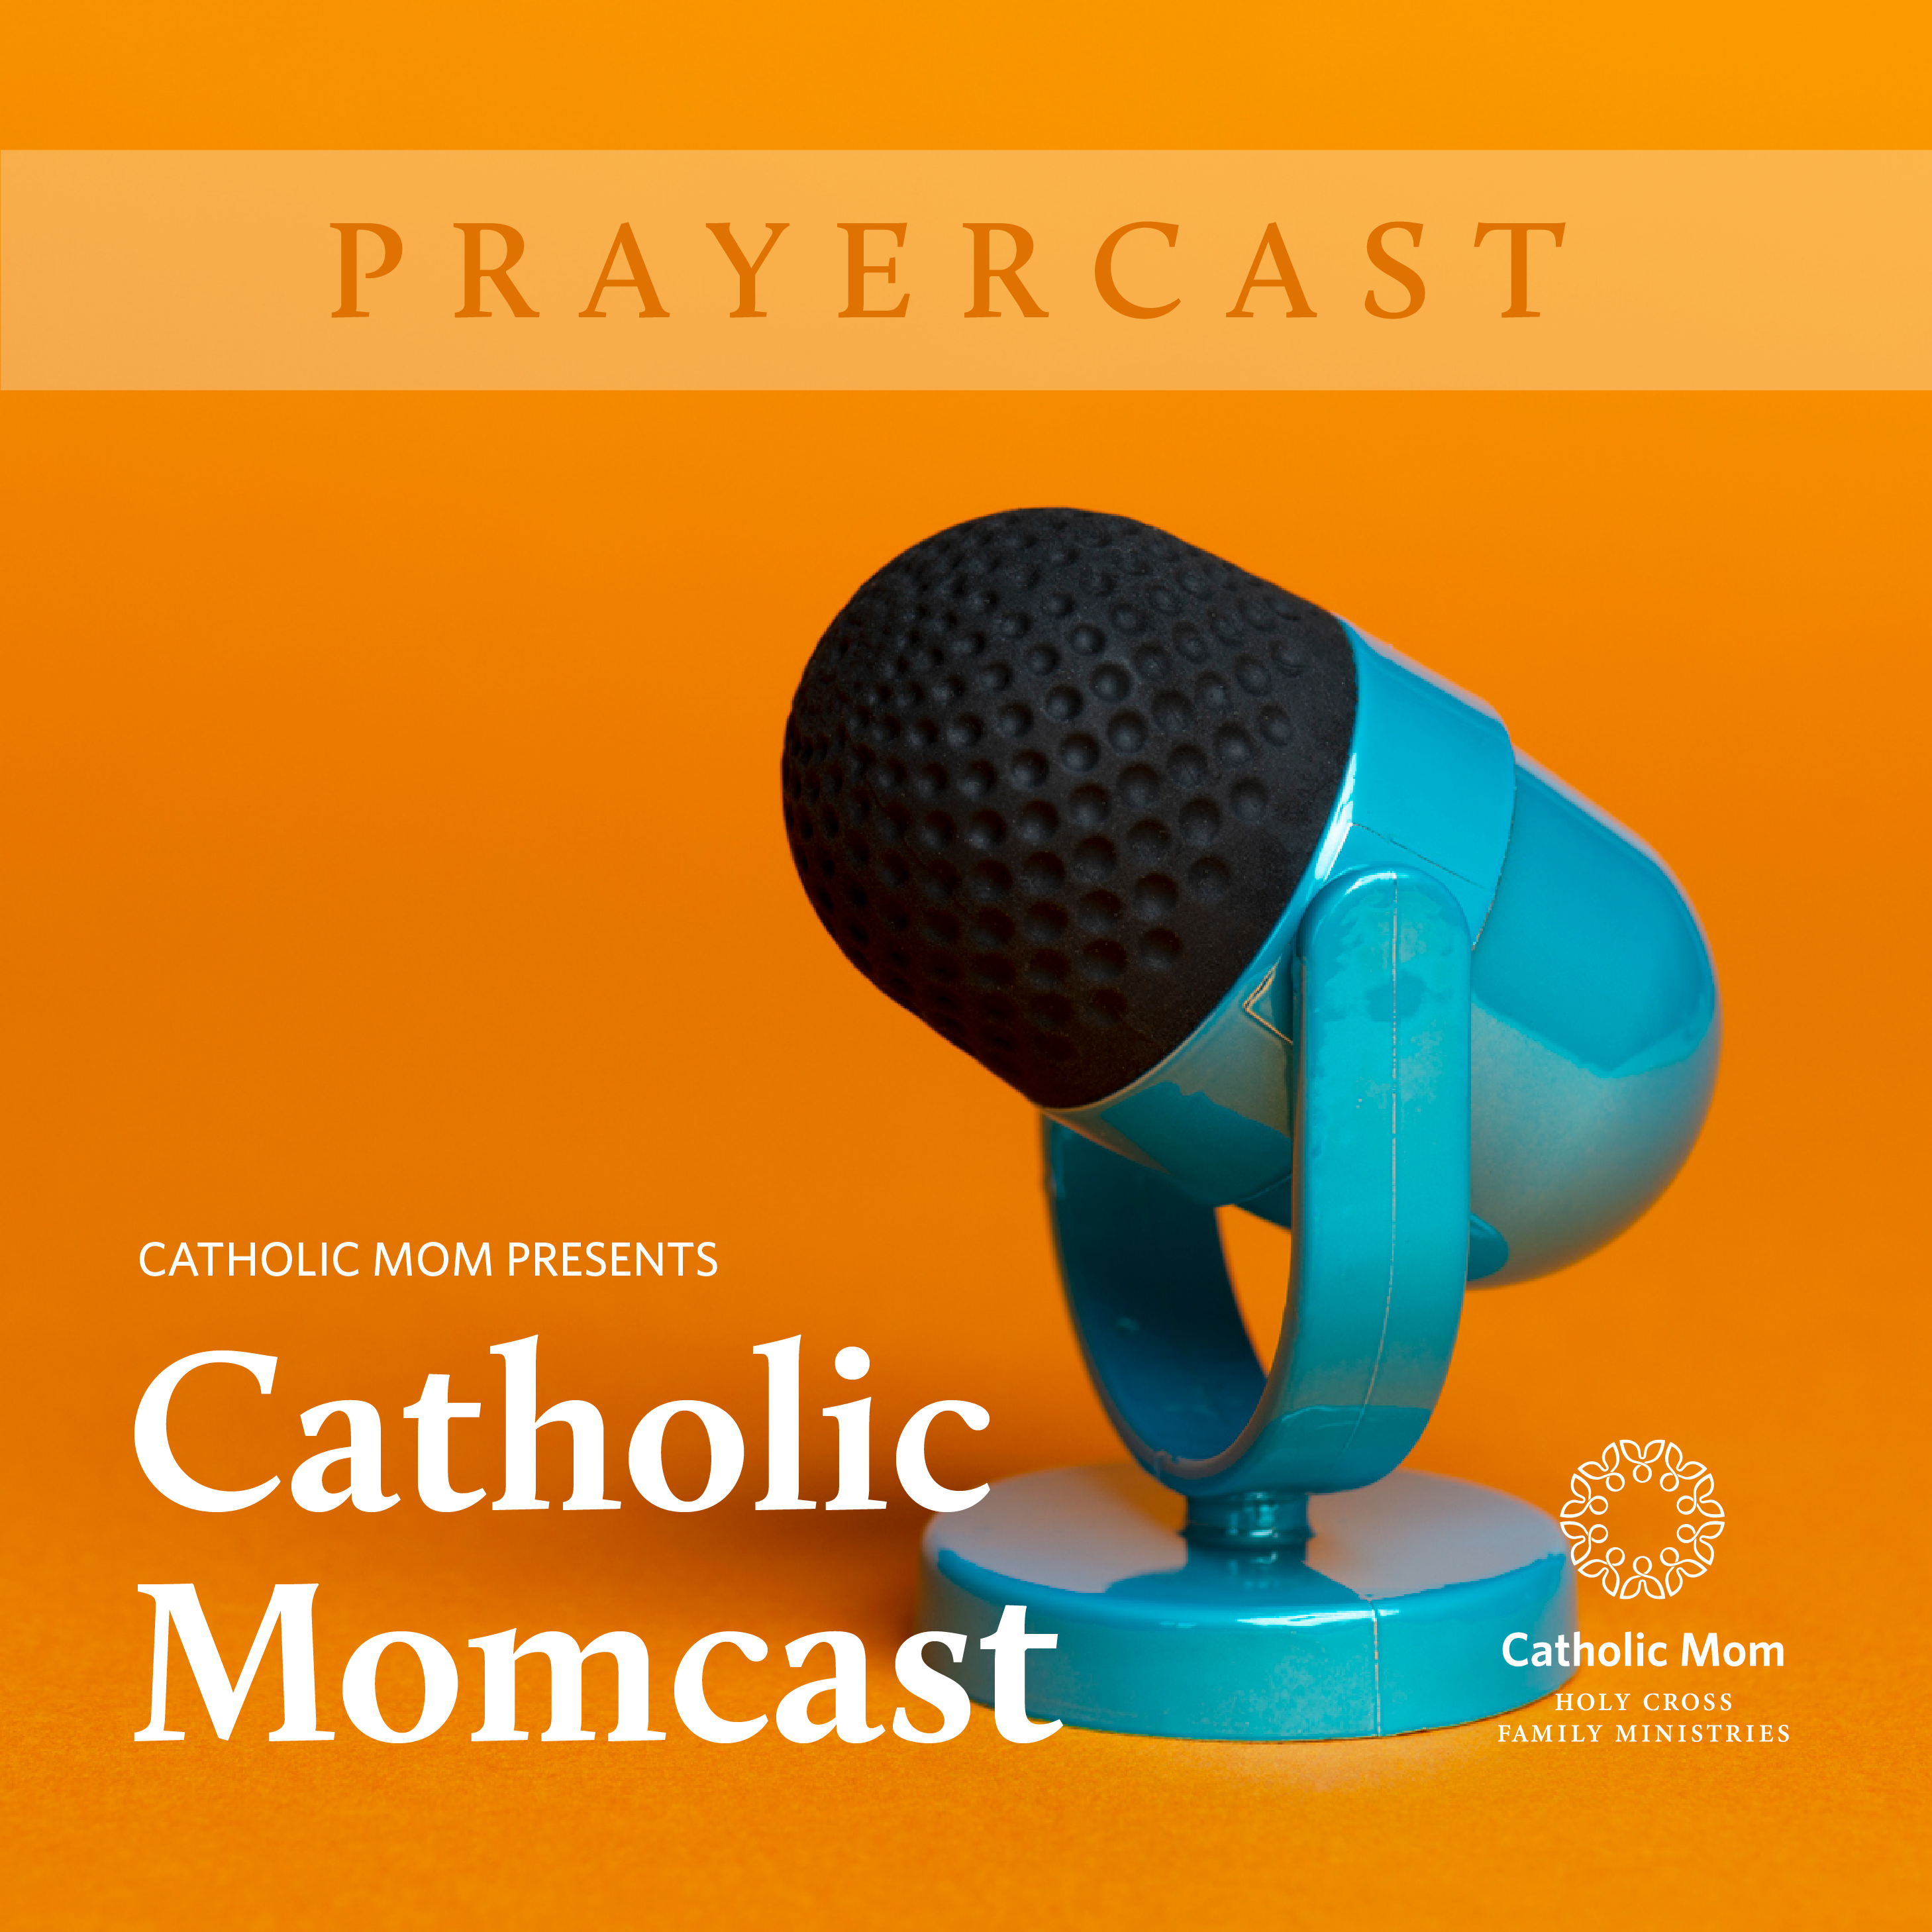 Prayer cast_Momcast-1